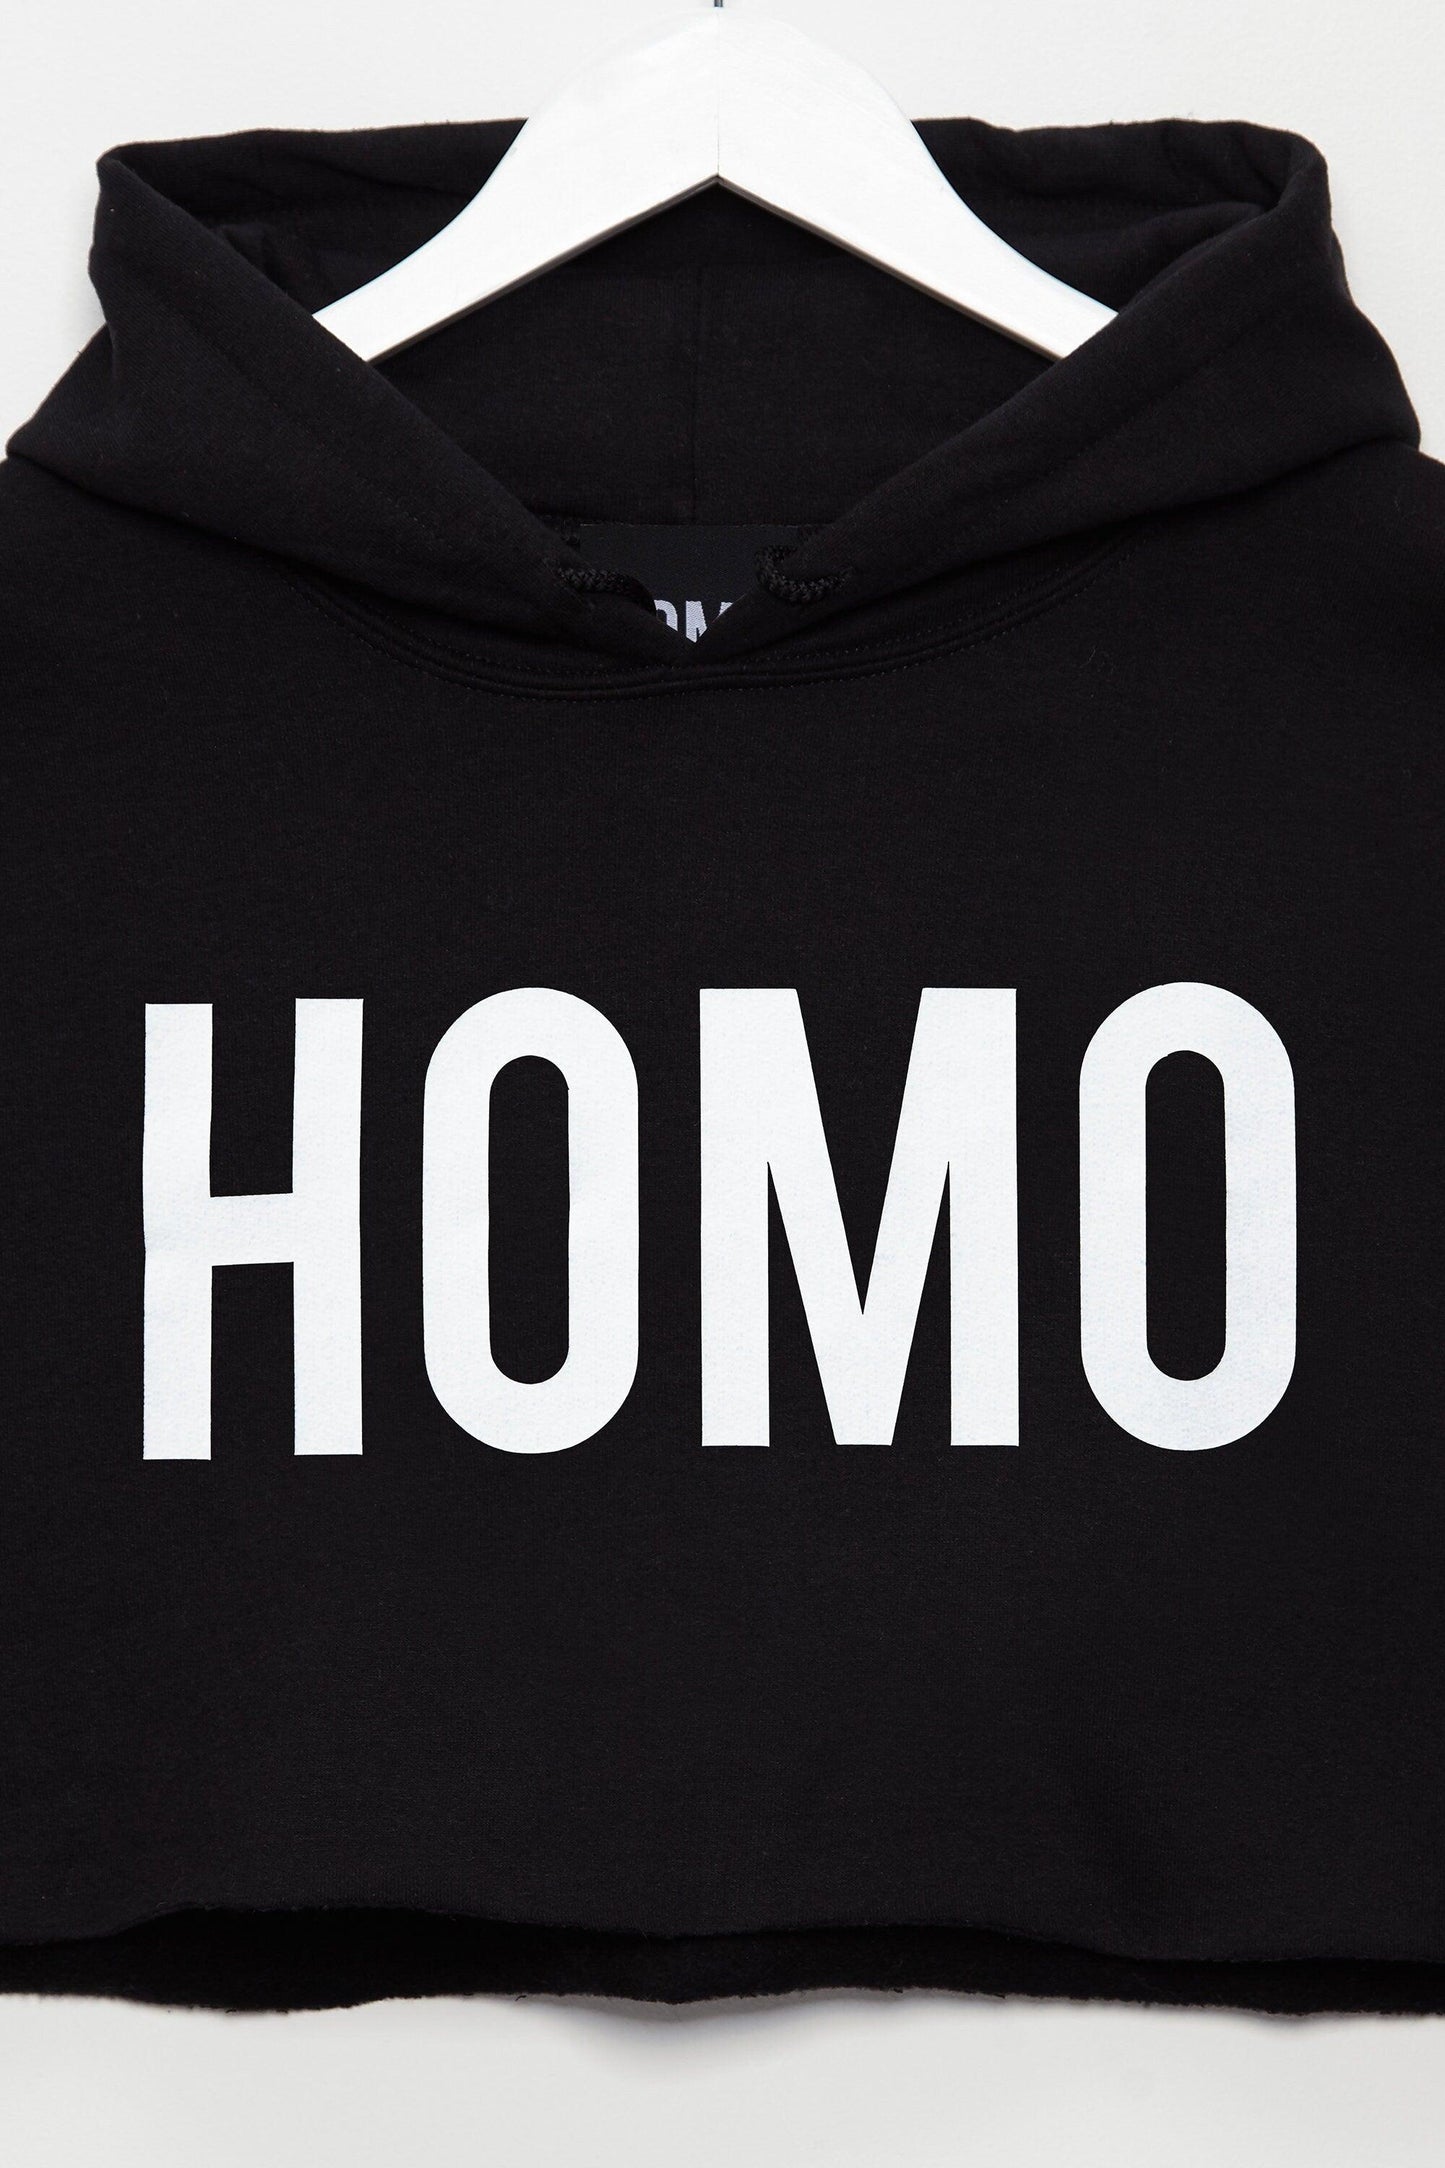 HOMO mens hoodie crop top - White on Black. - HOMOLONDON